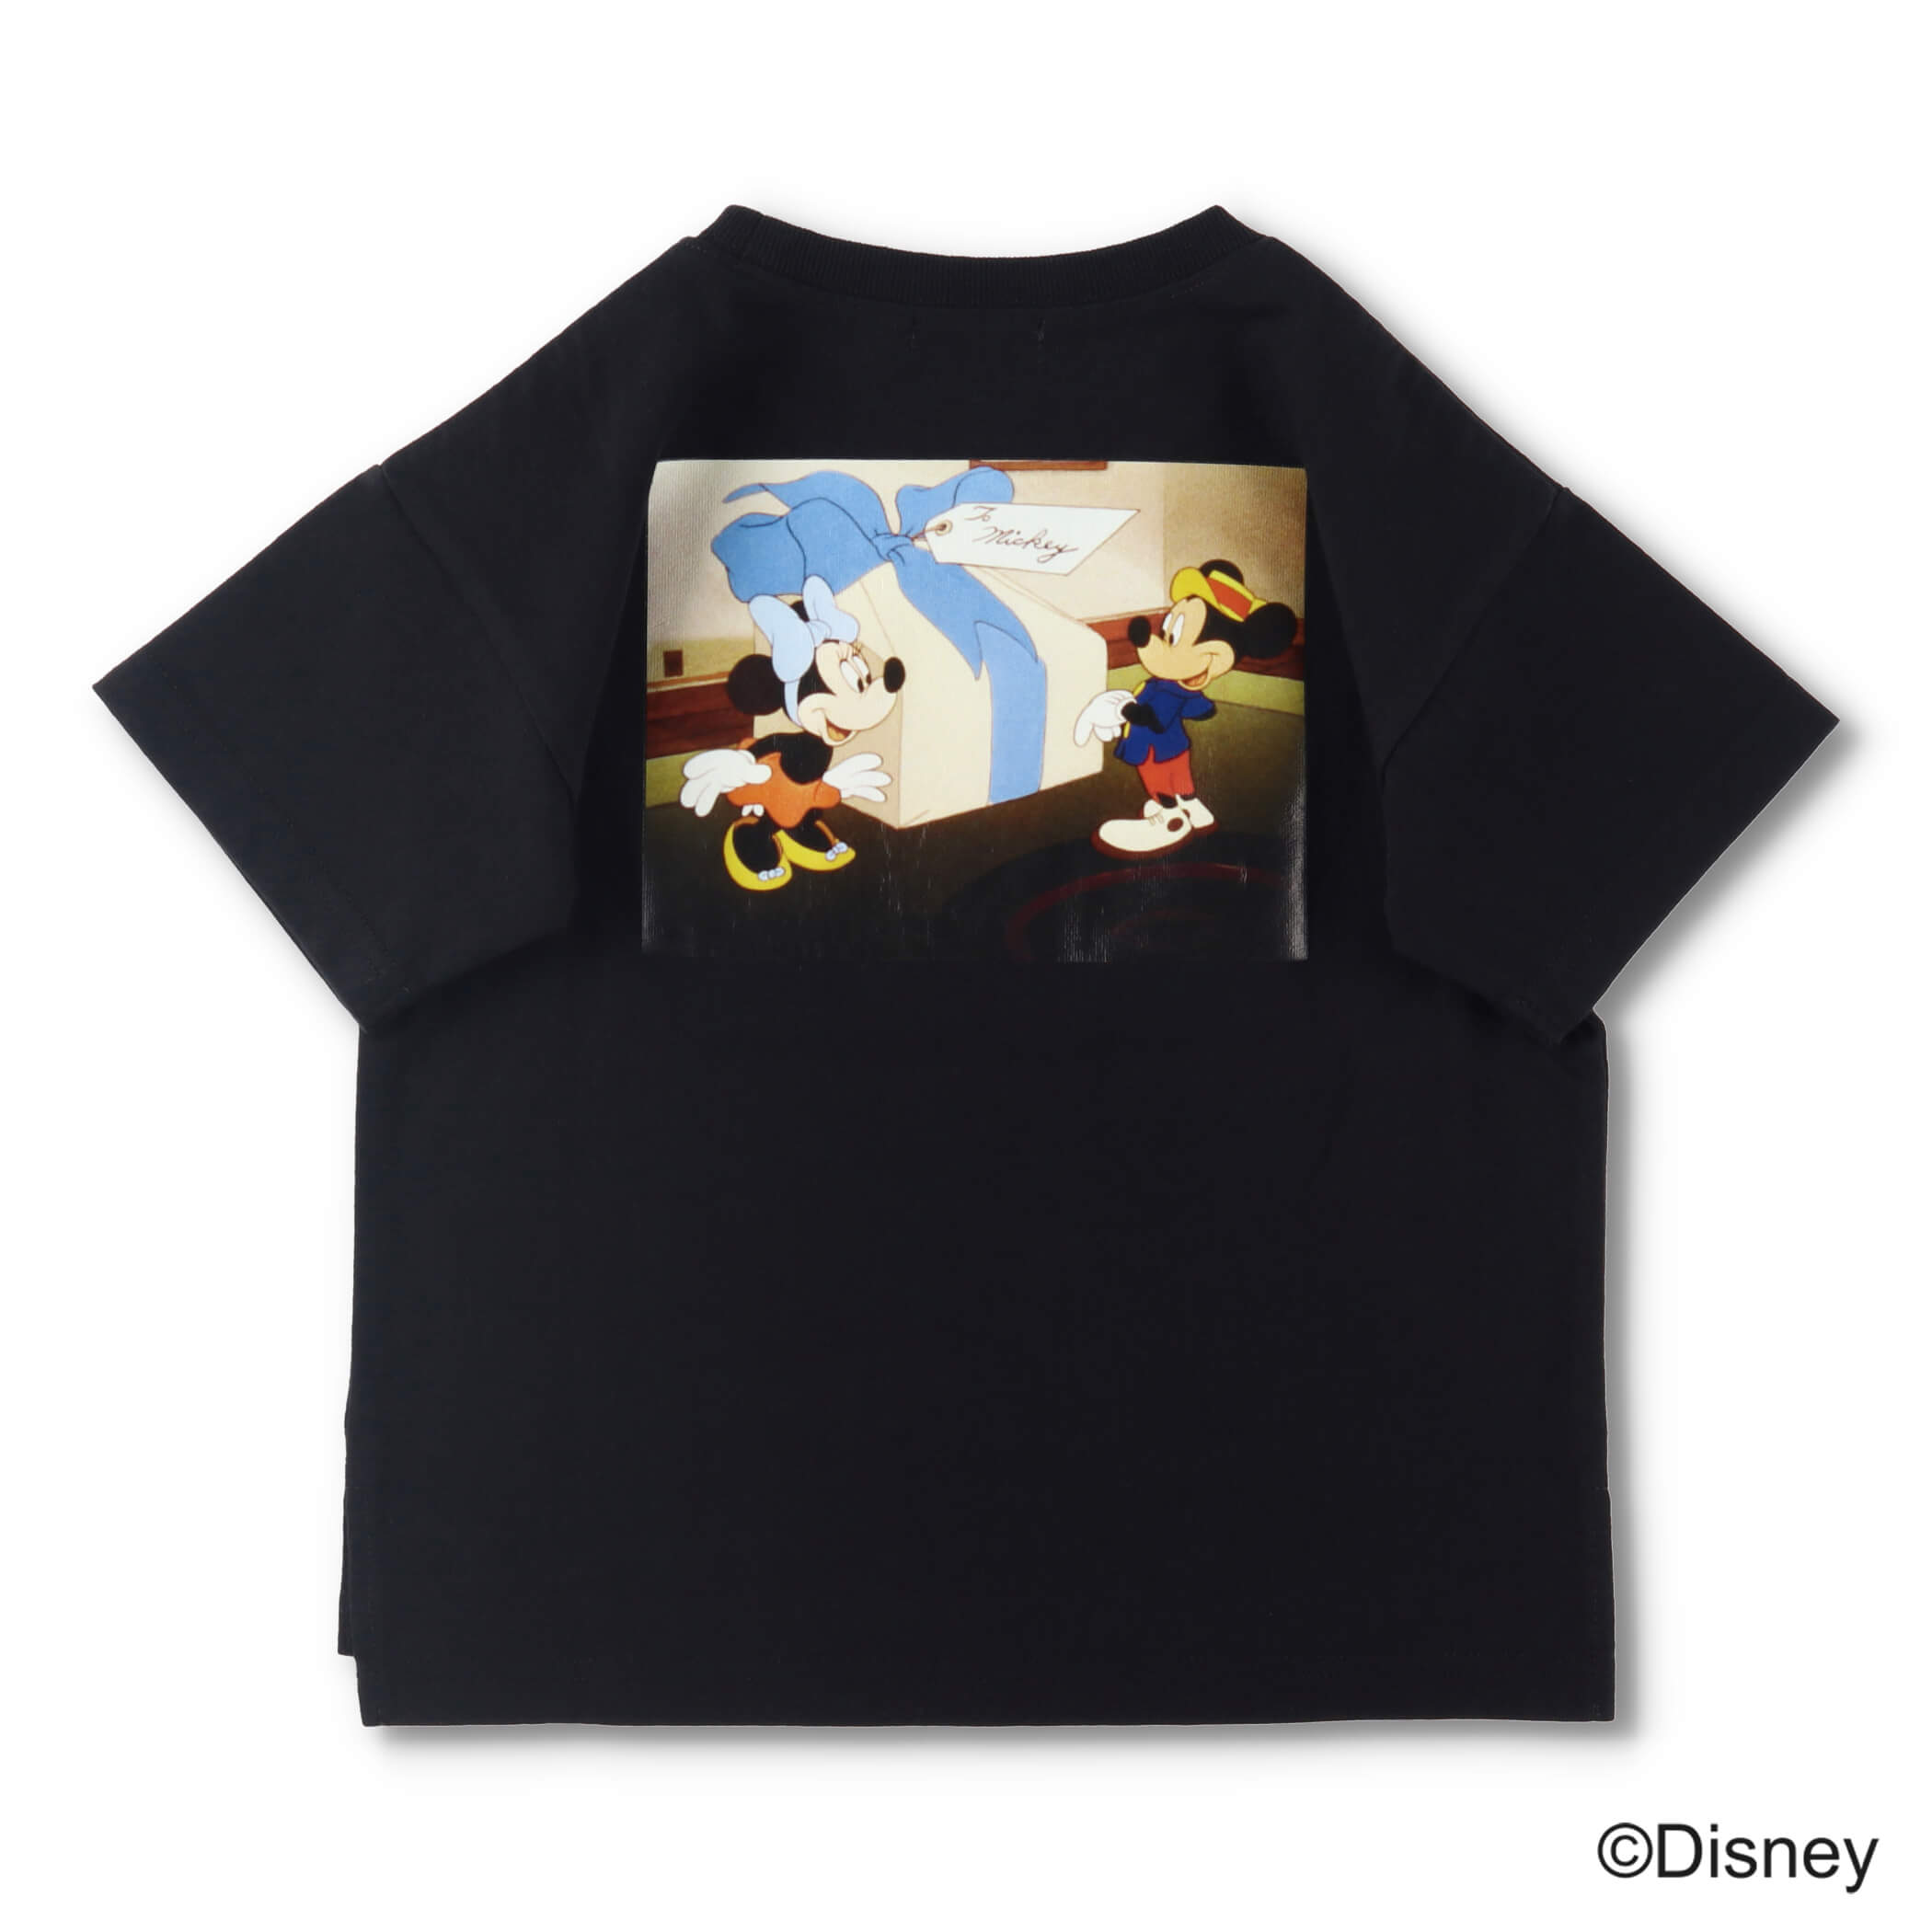 【Disney】フォトプリント半袖Tシャツ